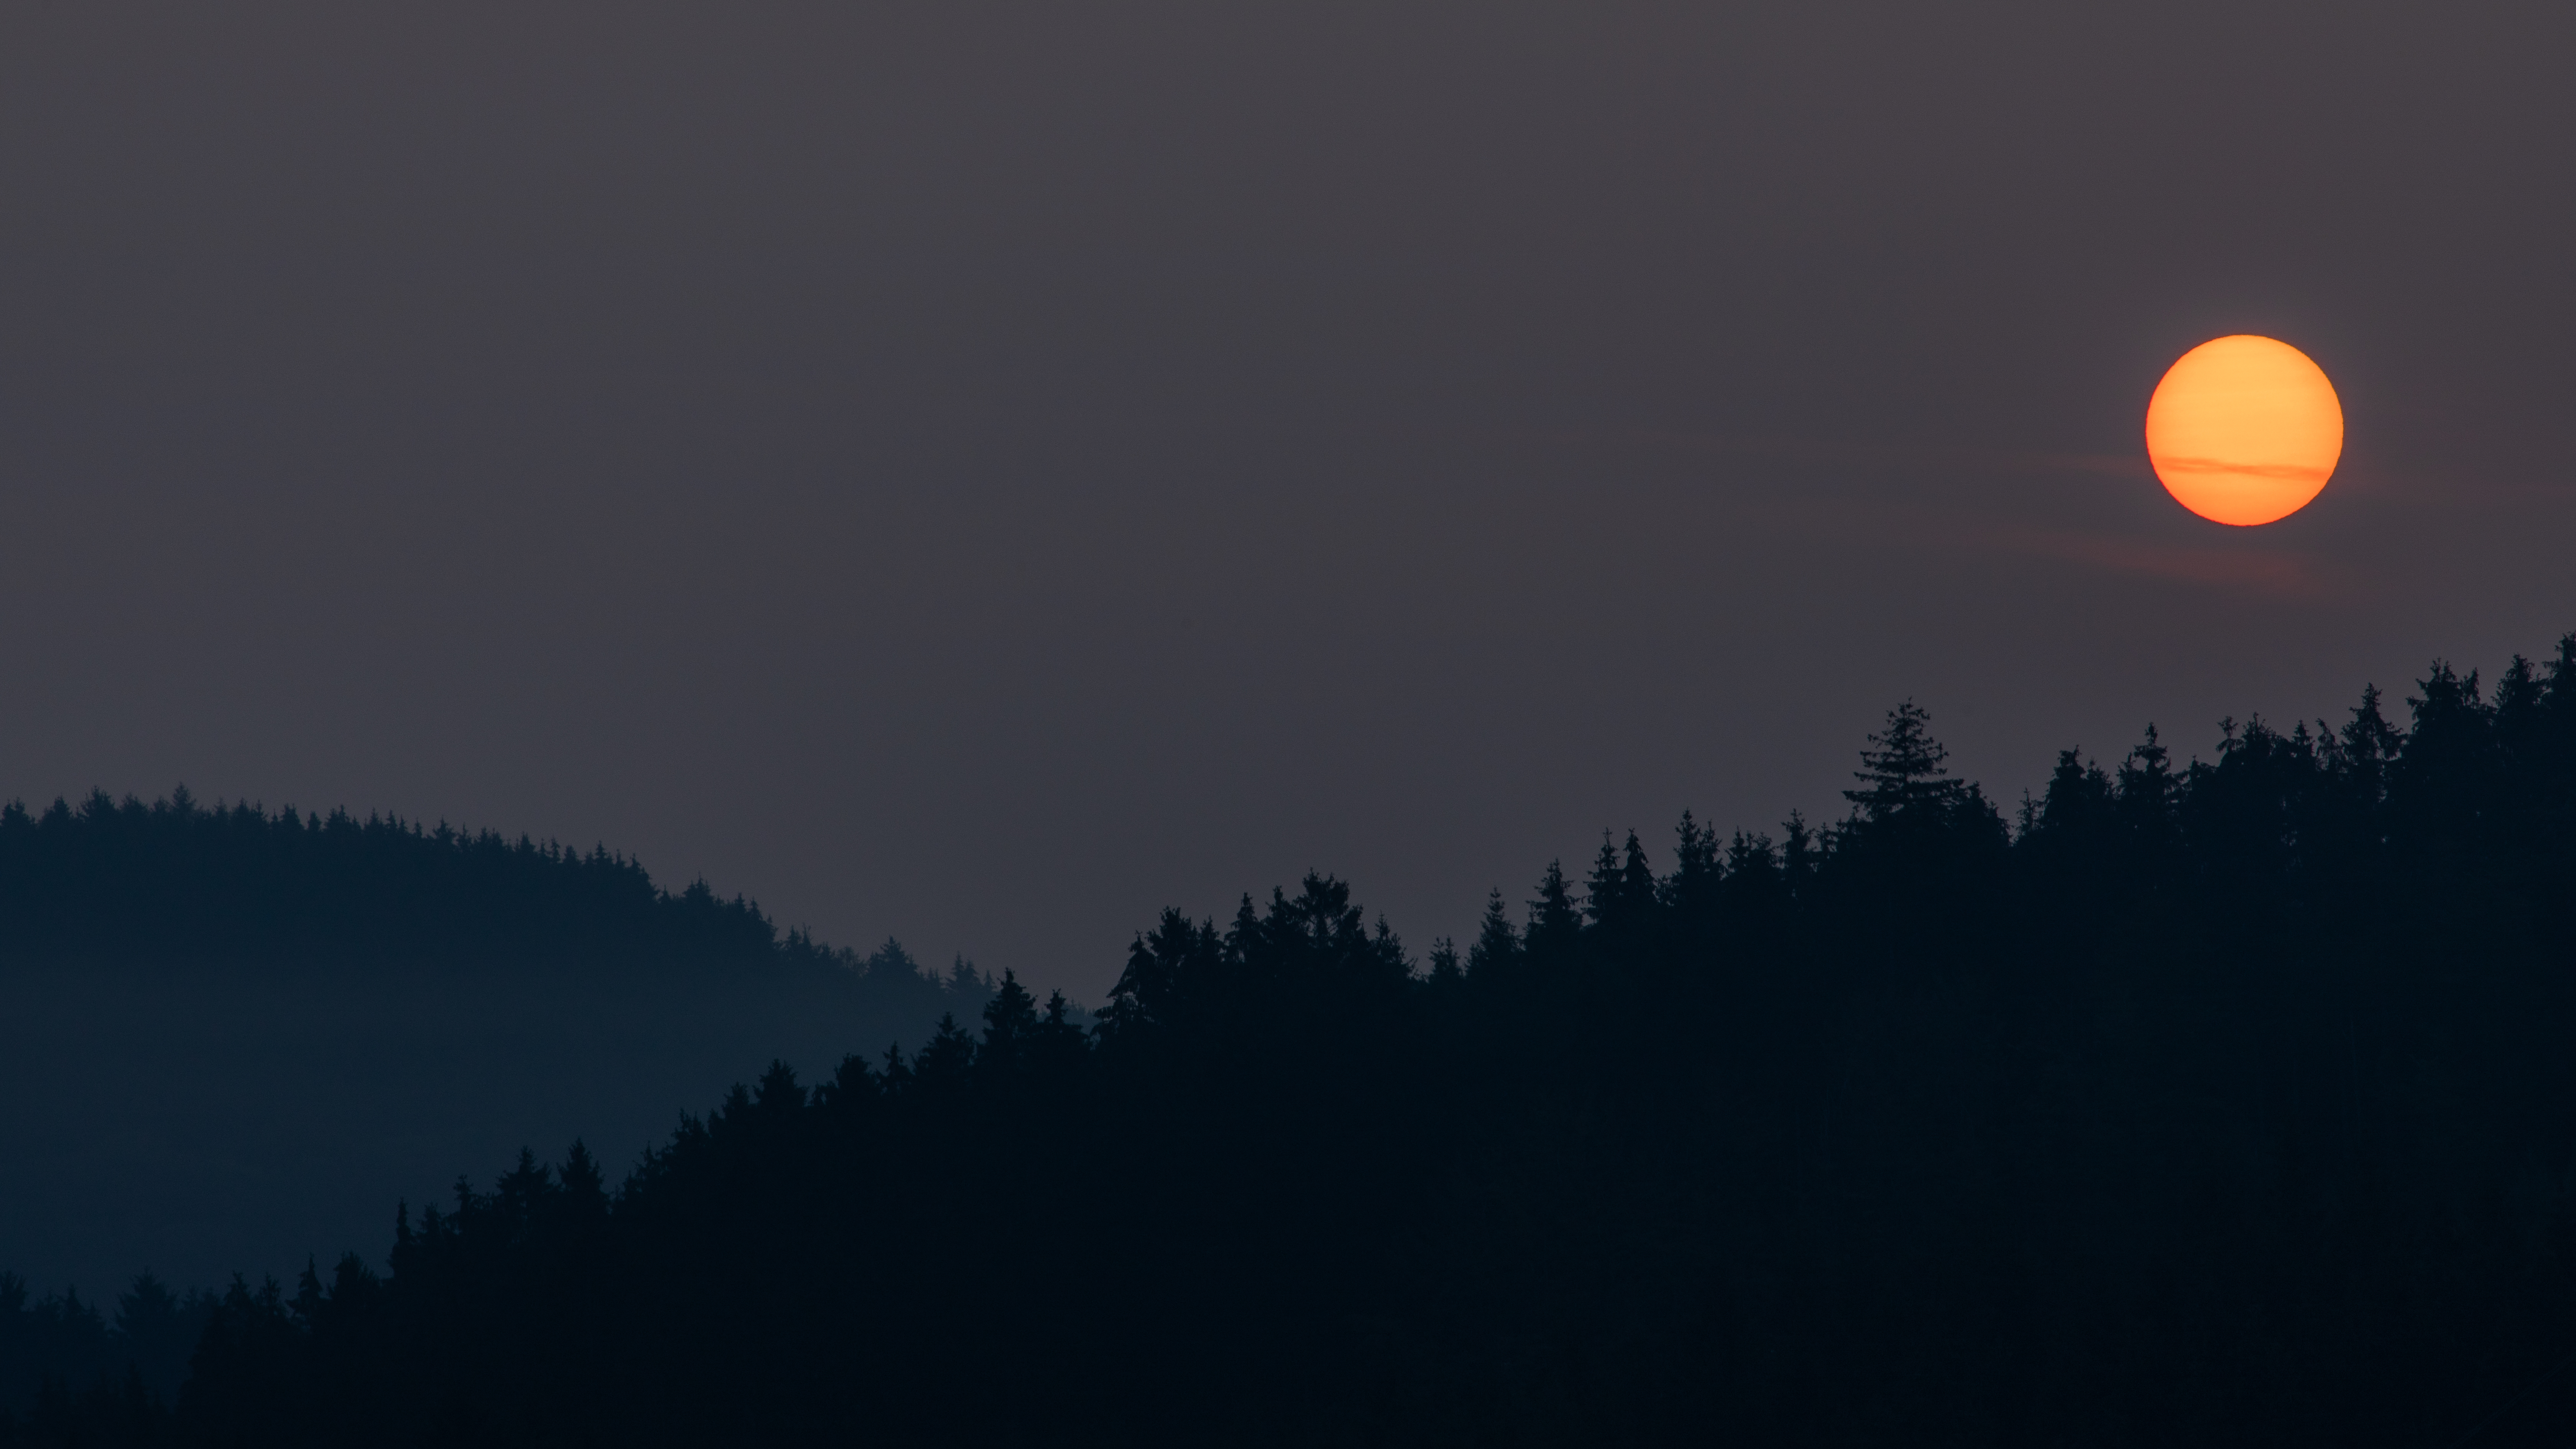 desktop Images night, dark, landscape, moon, forest